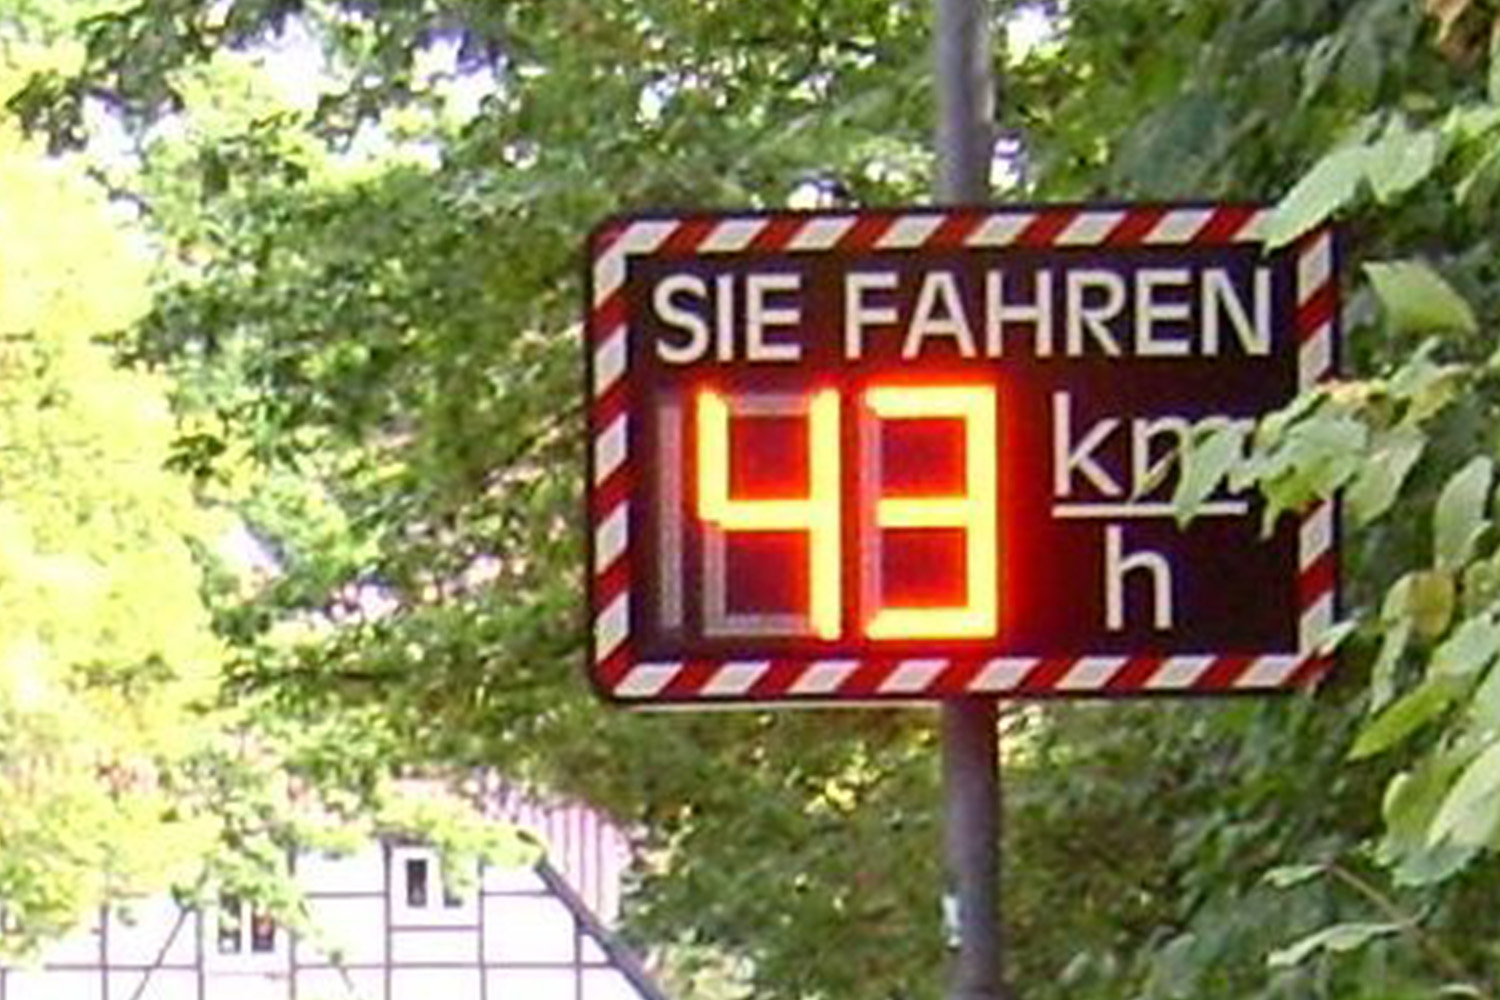 You are currently viewing Bezirksrat 310 Westliches Ringgebiet: Anbringen einer Geschwindigkeitsanzeigetafel in der Goslarschen Str.